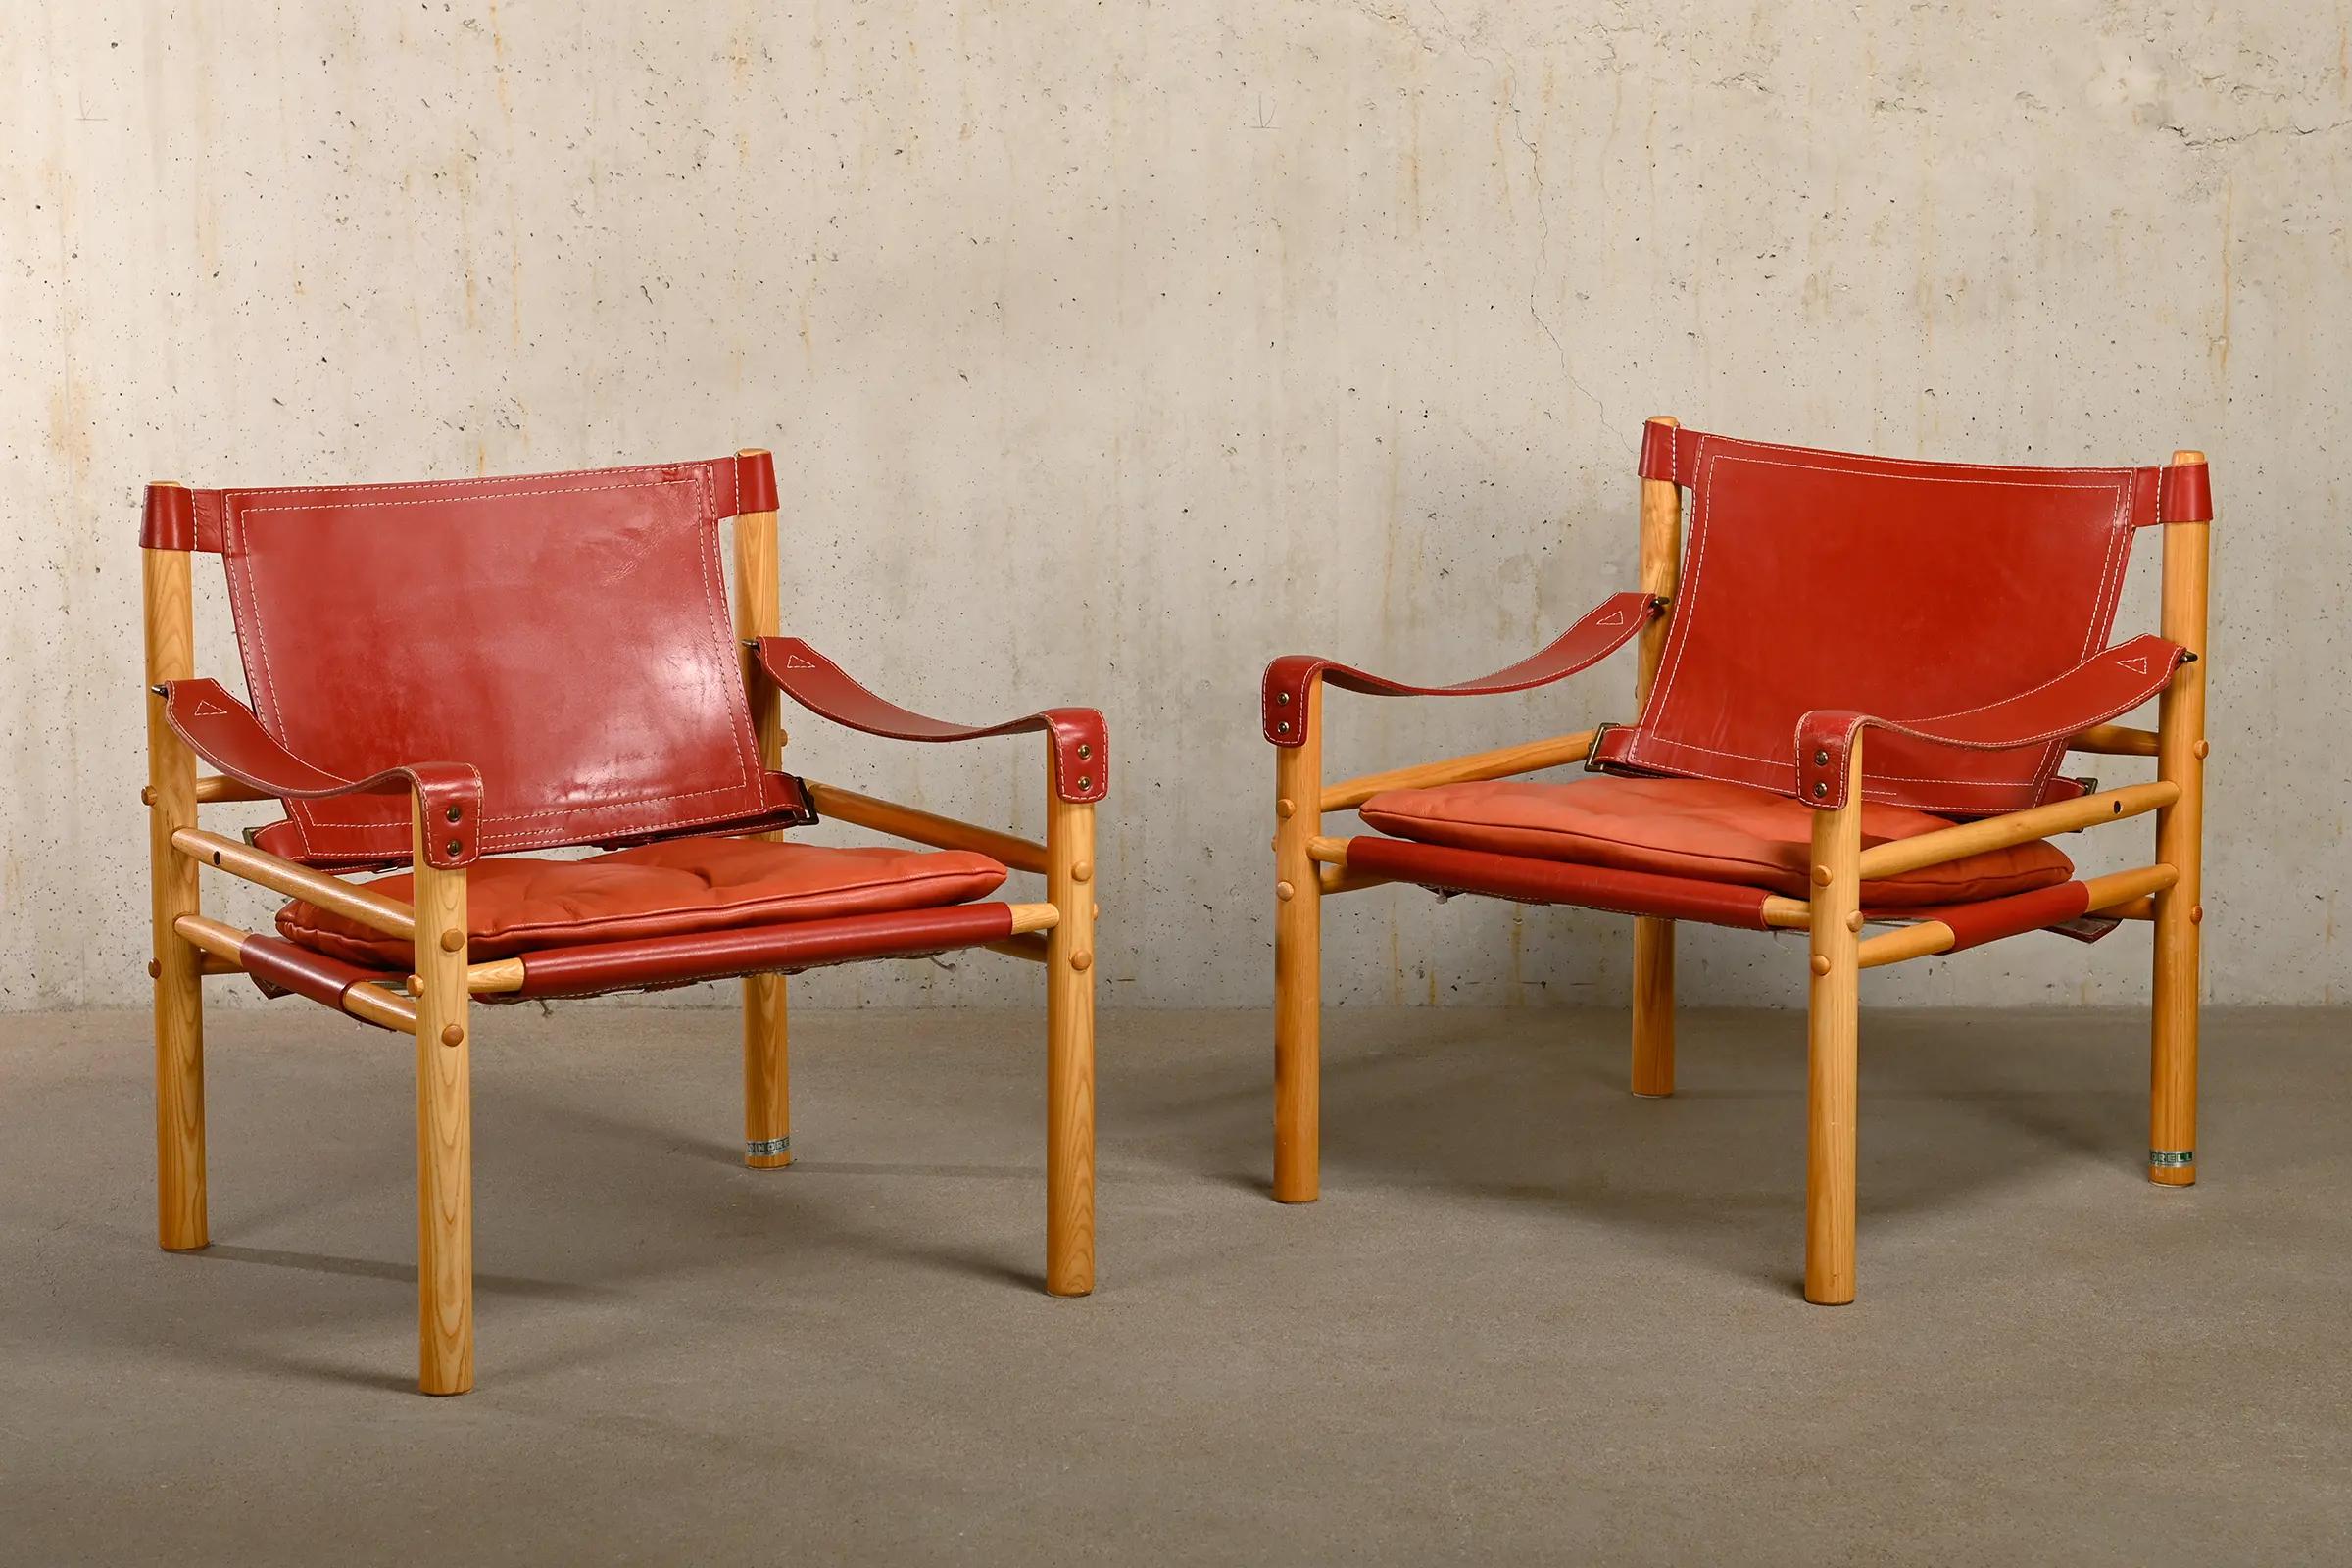 Superbe paire de chaises longues Sirocco Safari conçues par Arne Norell et fabriquées par Norell Möbel AB en Suède. Cadre en frêne patiné clair avec coussins d'origine en cuir rouge. Tous en très bon état. Signé avec les étiquettes du fabricant.